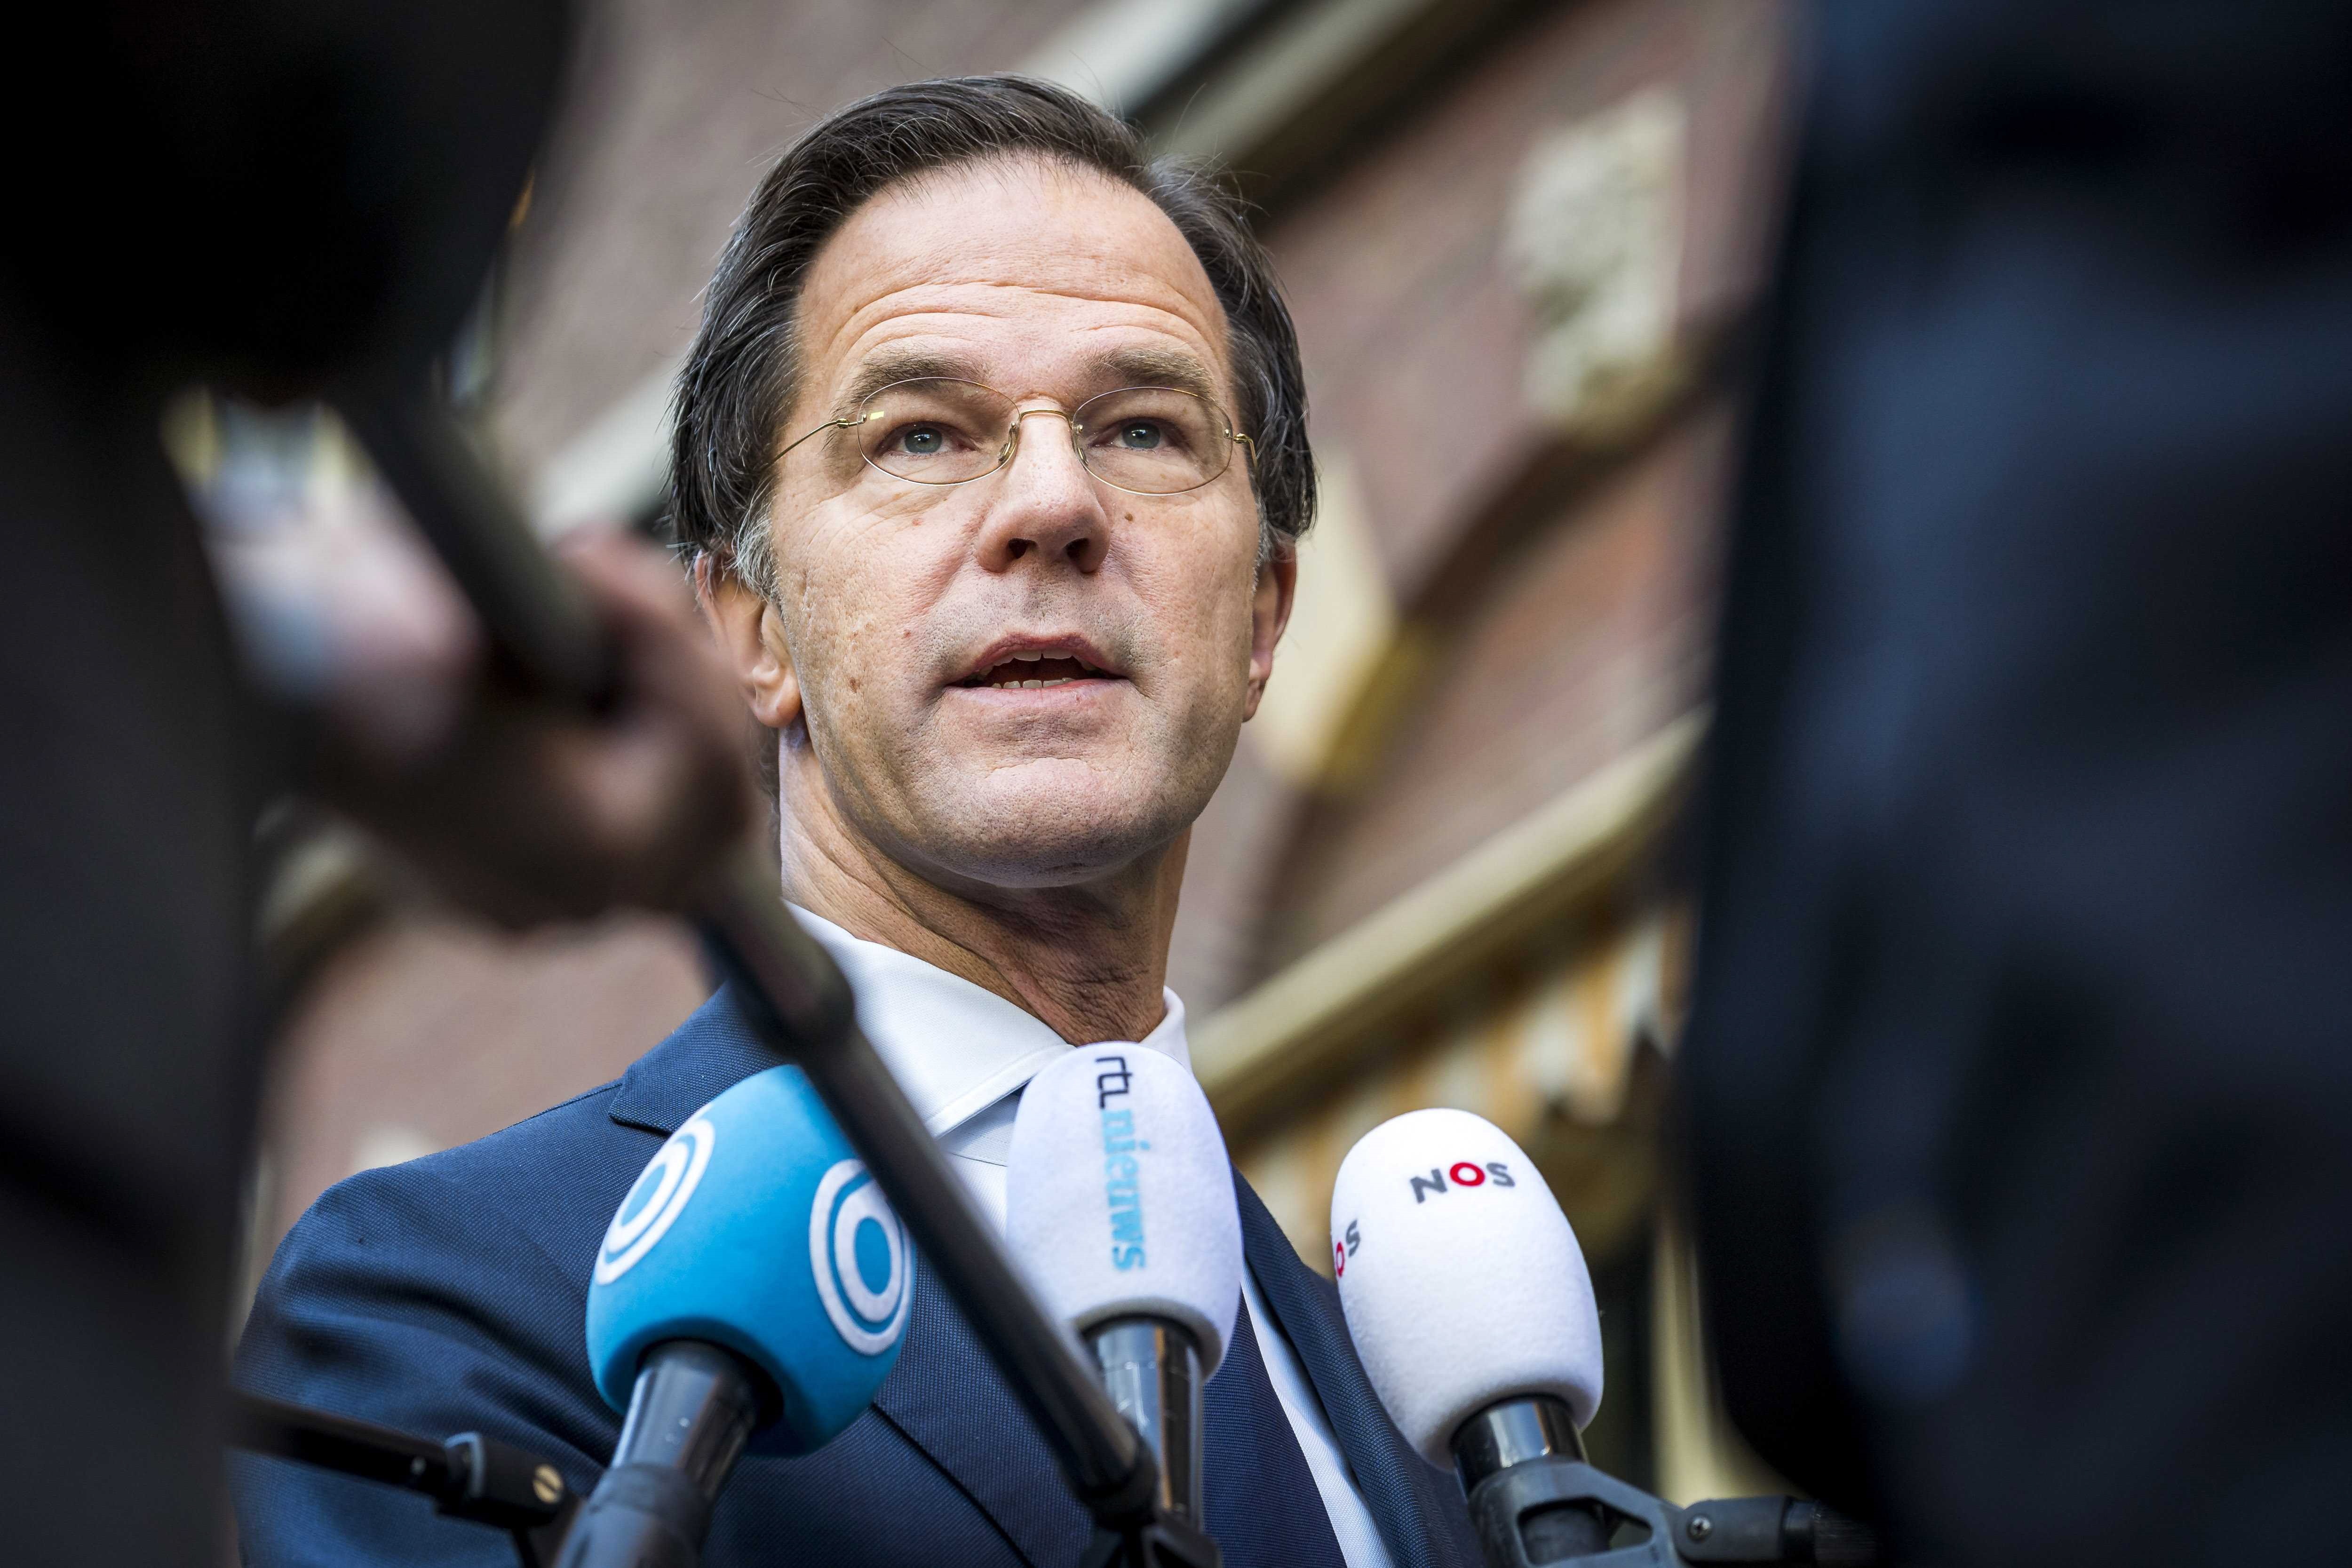 El primer ministro saliente de Países Bajos, Mark Rutte, condenó este lunes como "inadmisibles" los disturbios de este fin de semana en varias ciudades neerlandesas contra el toque de queda por la pandemia (EFE/EPA/LEX VAN LIESHOUT)
